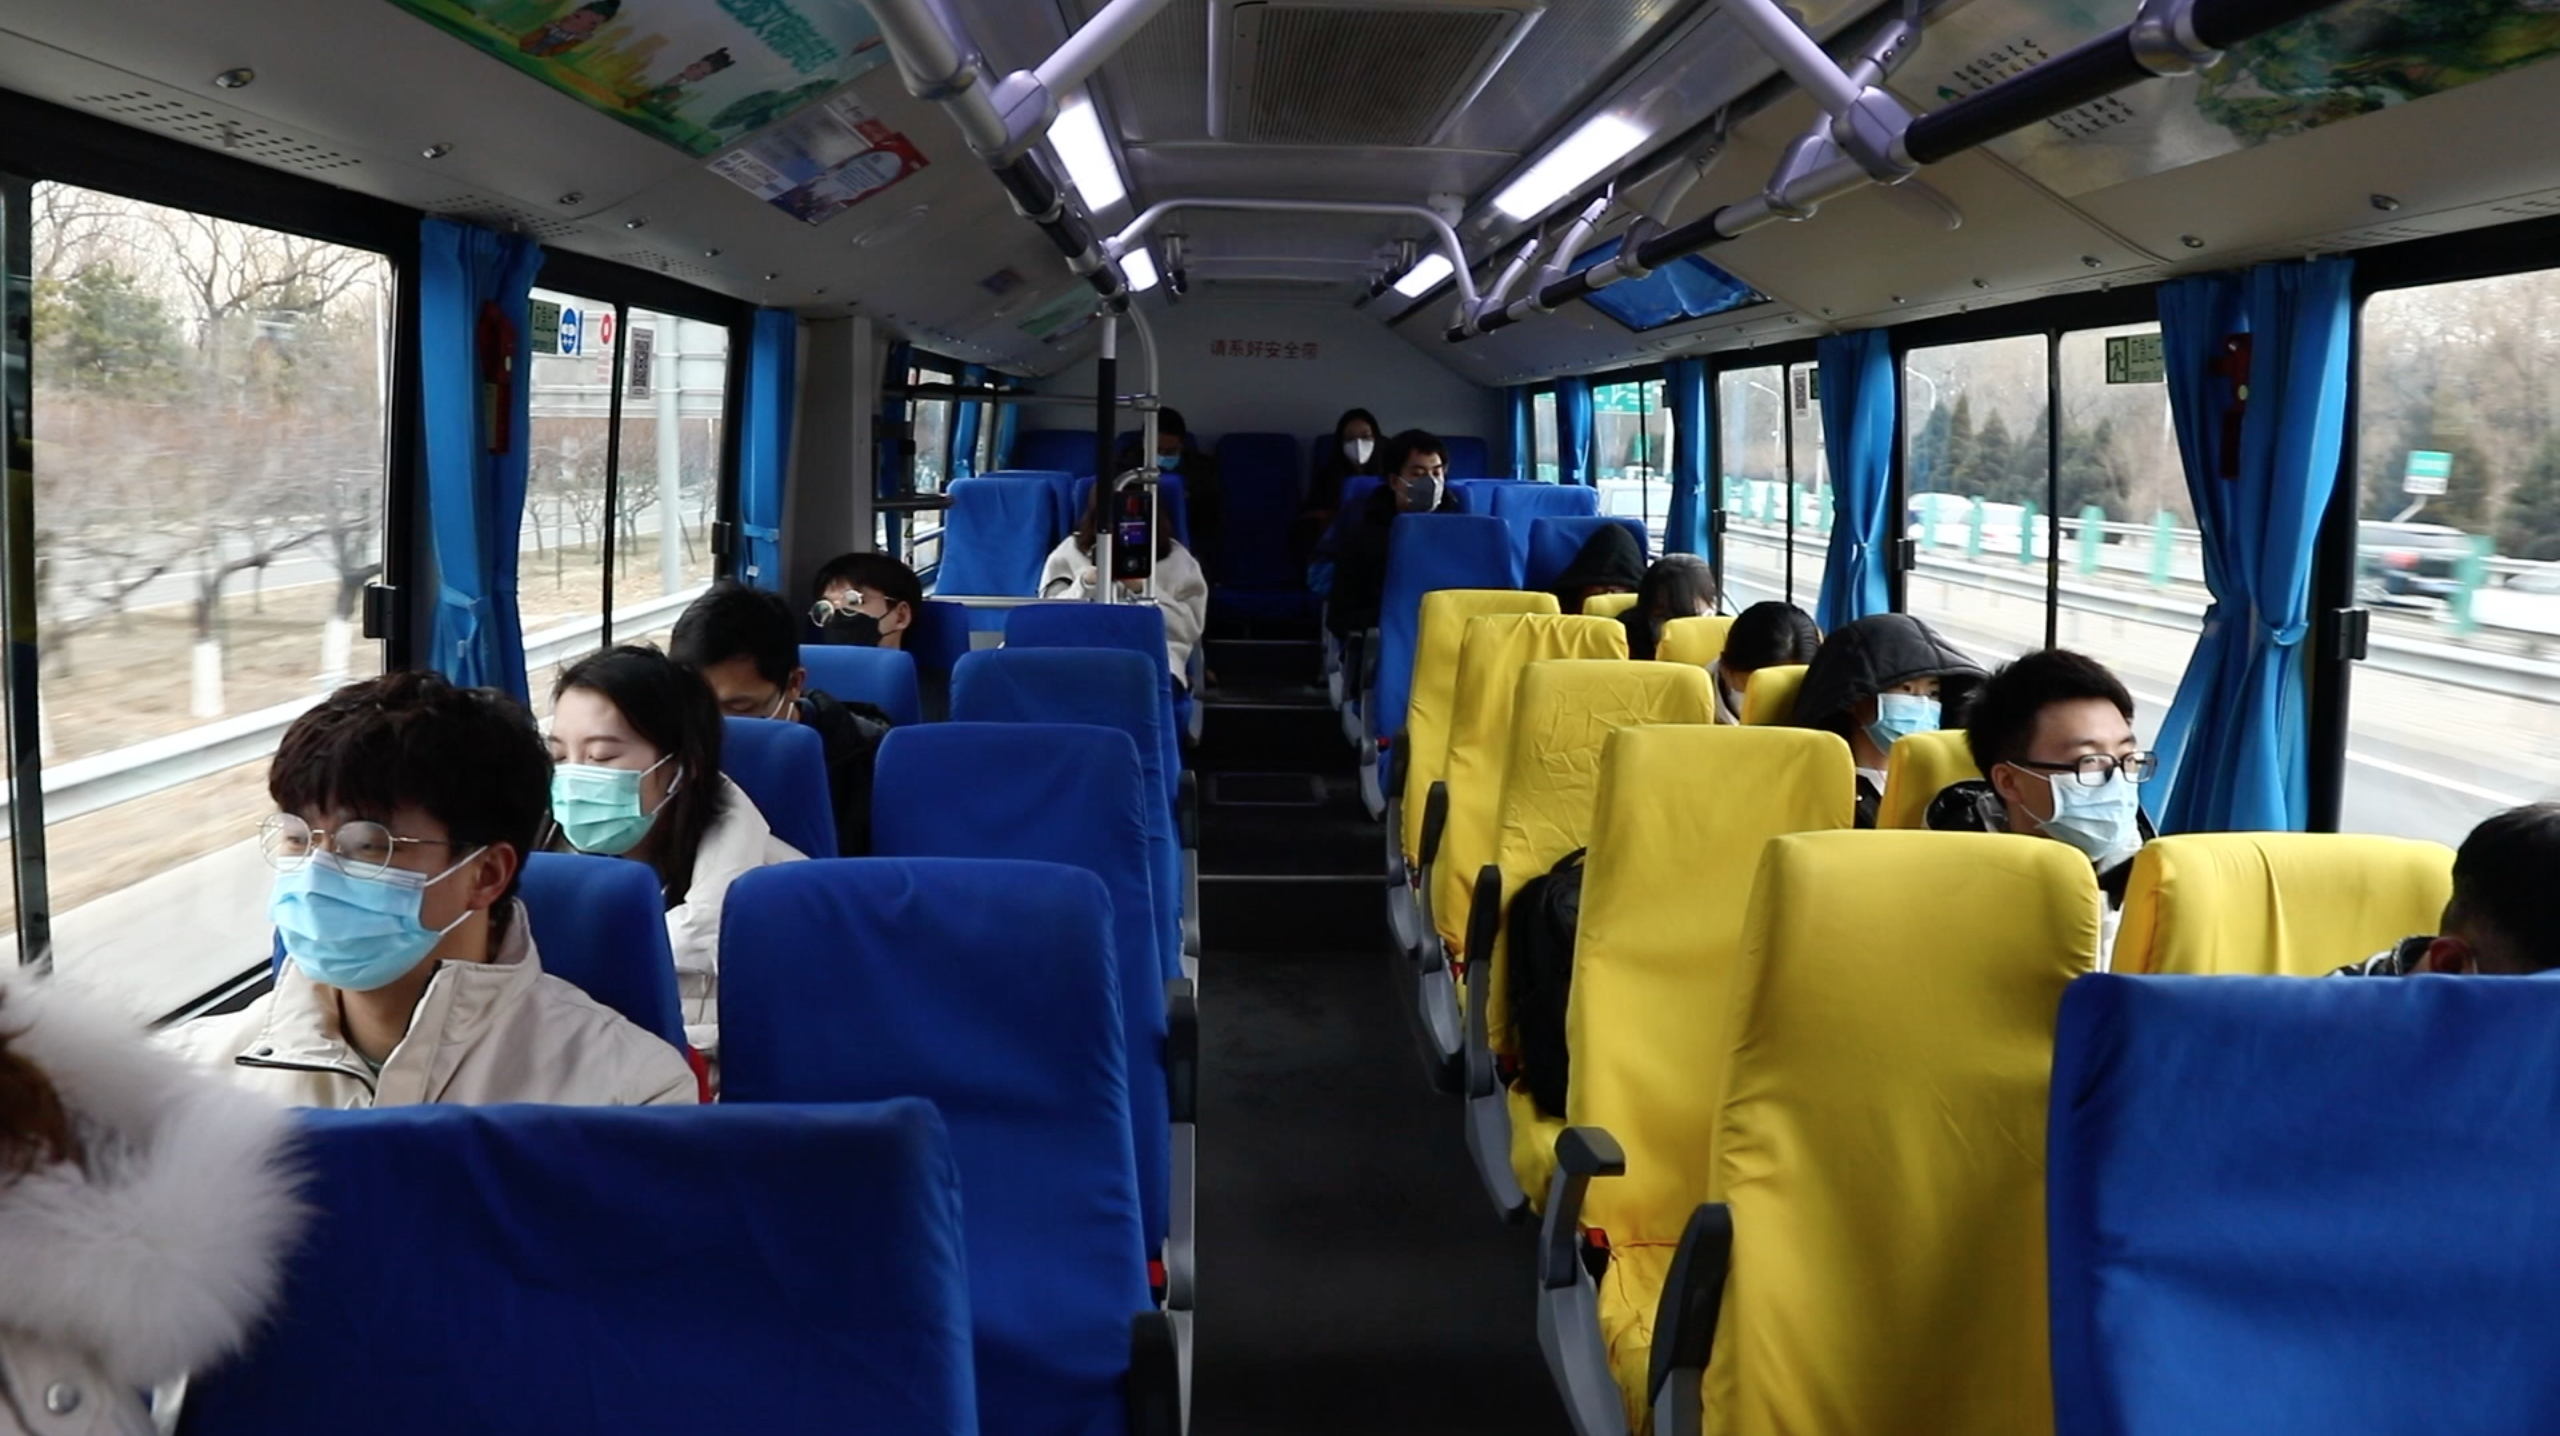 Trên tuyến buýt đặc biệt này, hành khách phải ngồi cách nhau ở khoảng cách an toàn, mỗi hàng ghế chỉ 1 người ngồi. Ảnh: CGTN